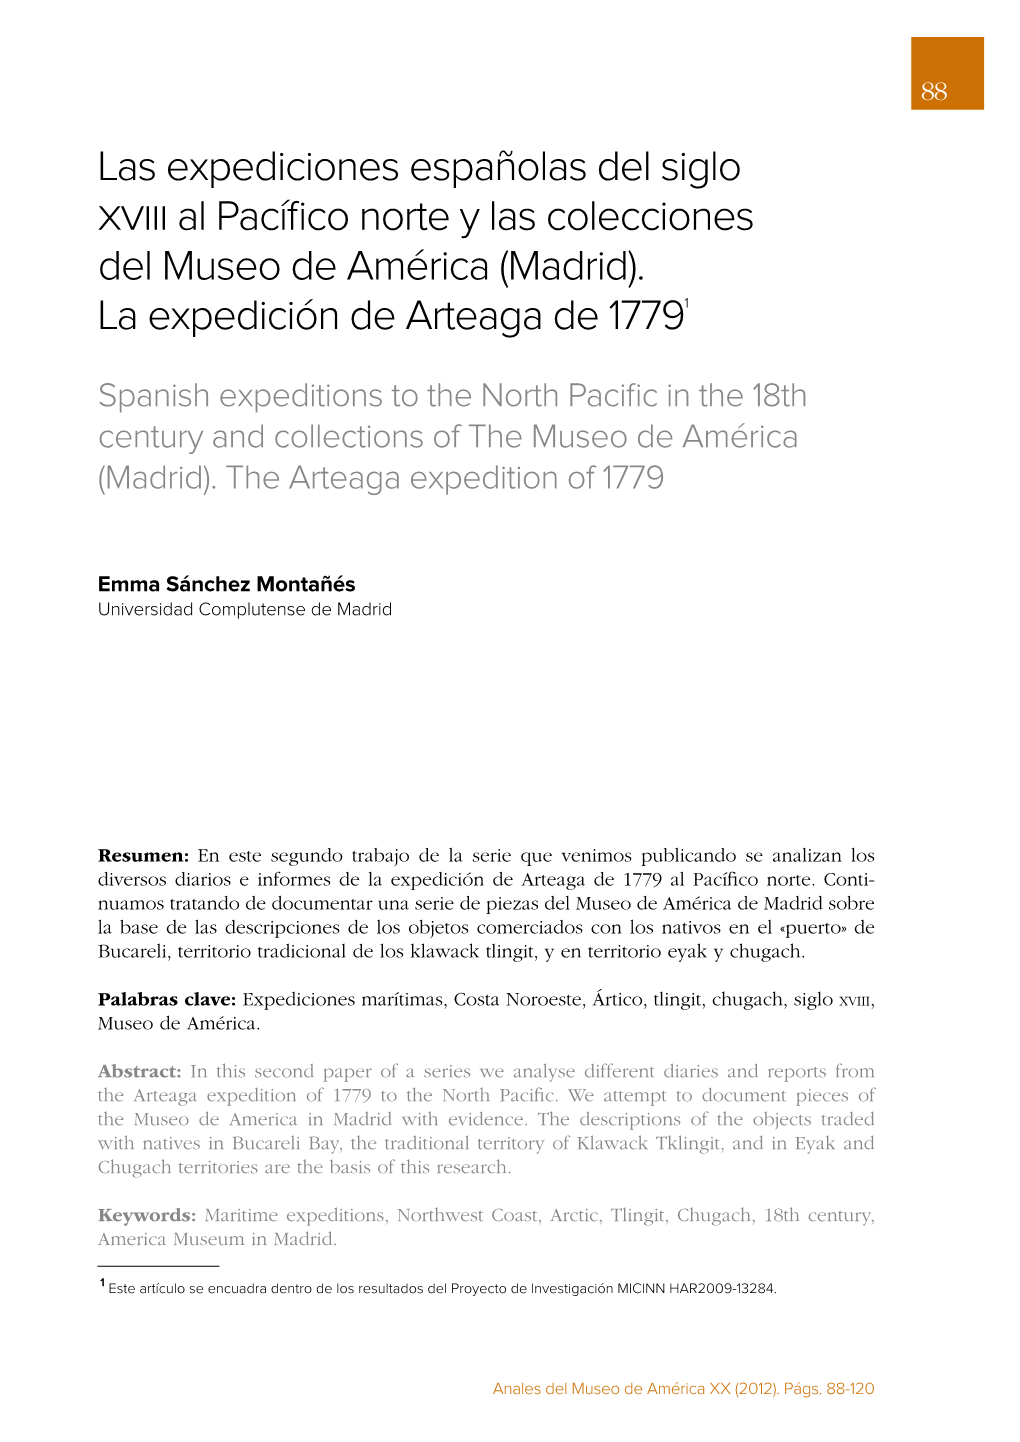 Las Expediciones Españolas Del Siglo Al Pacífico Norte Y Las Colecciones Del Museo De América